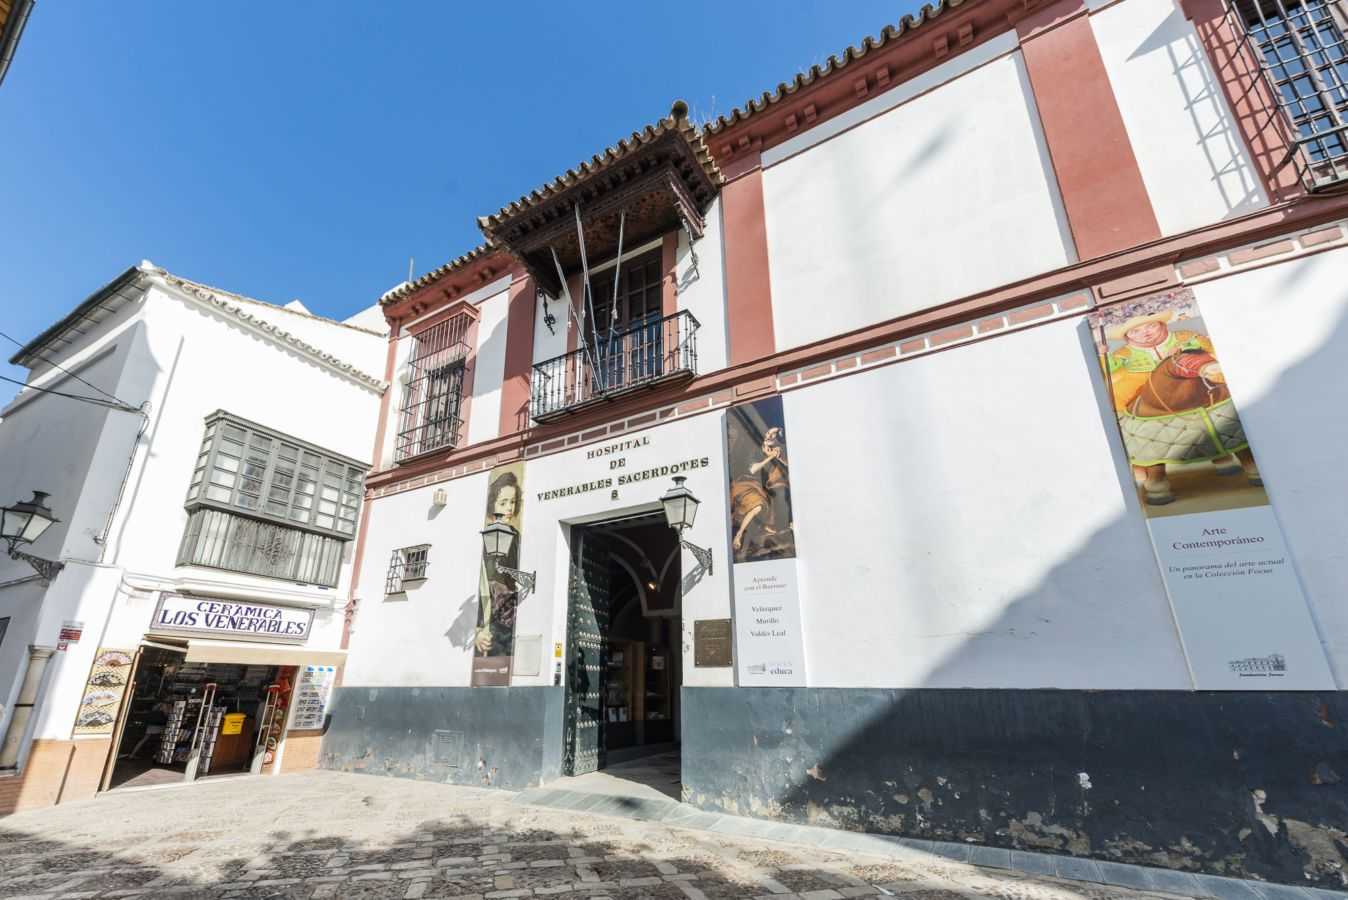 Hospital de los Venerables Sacerdotes Centro Velázquez